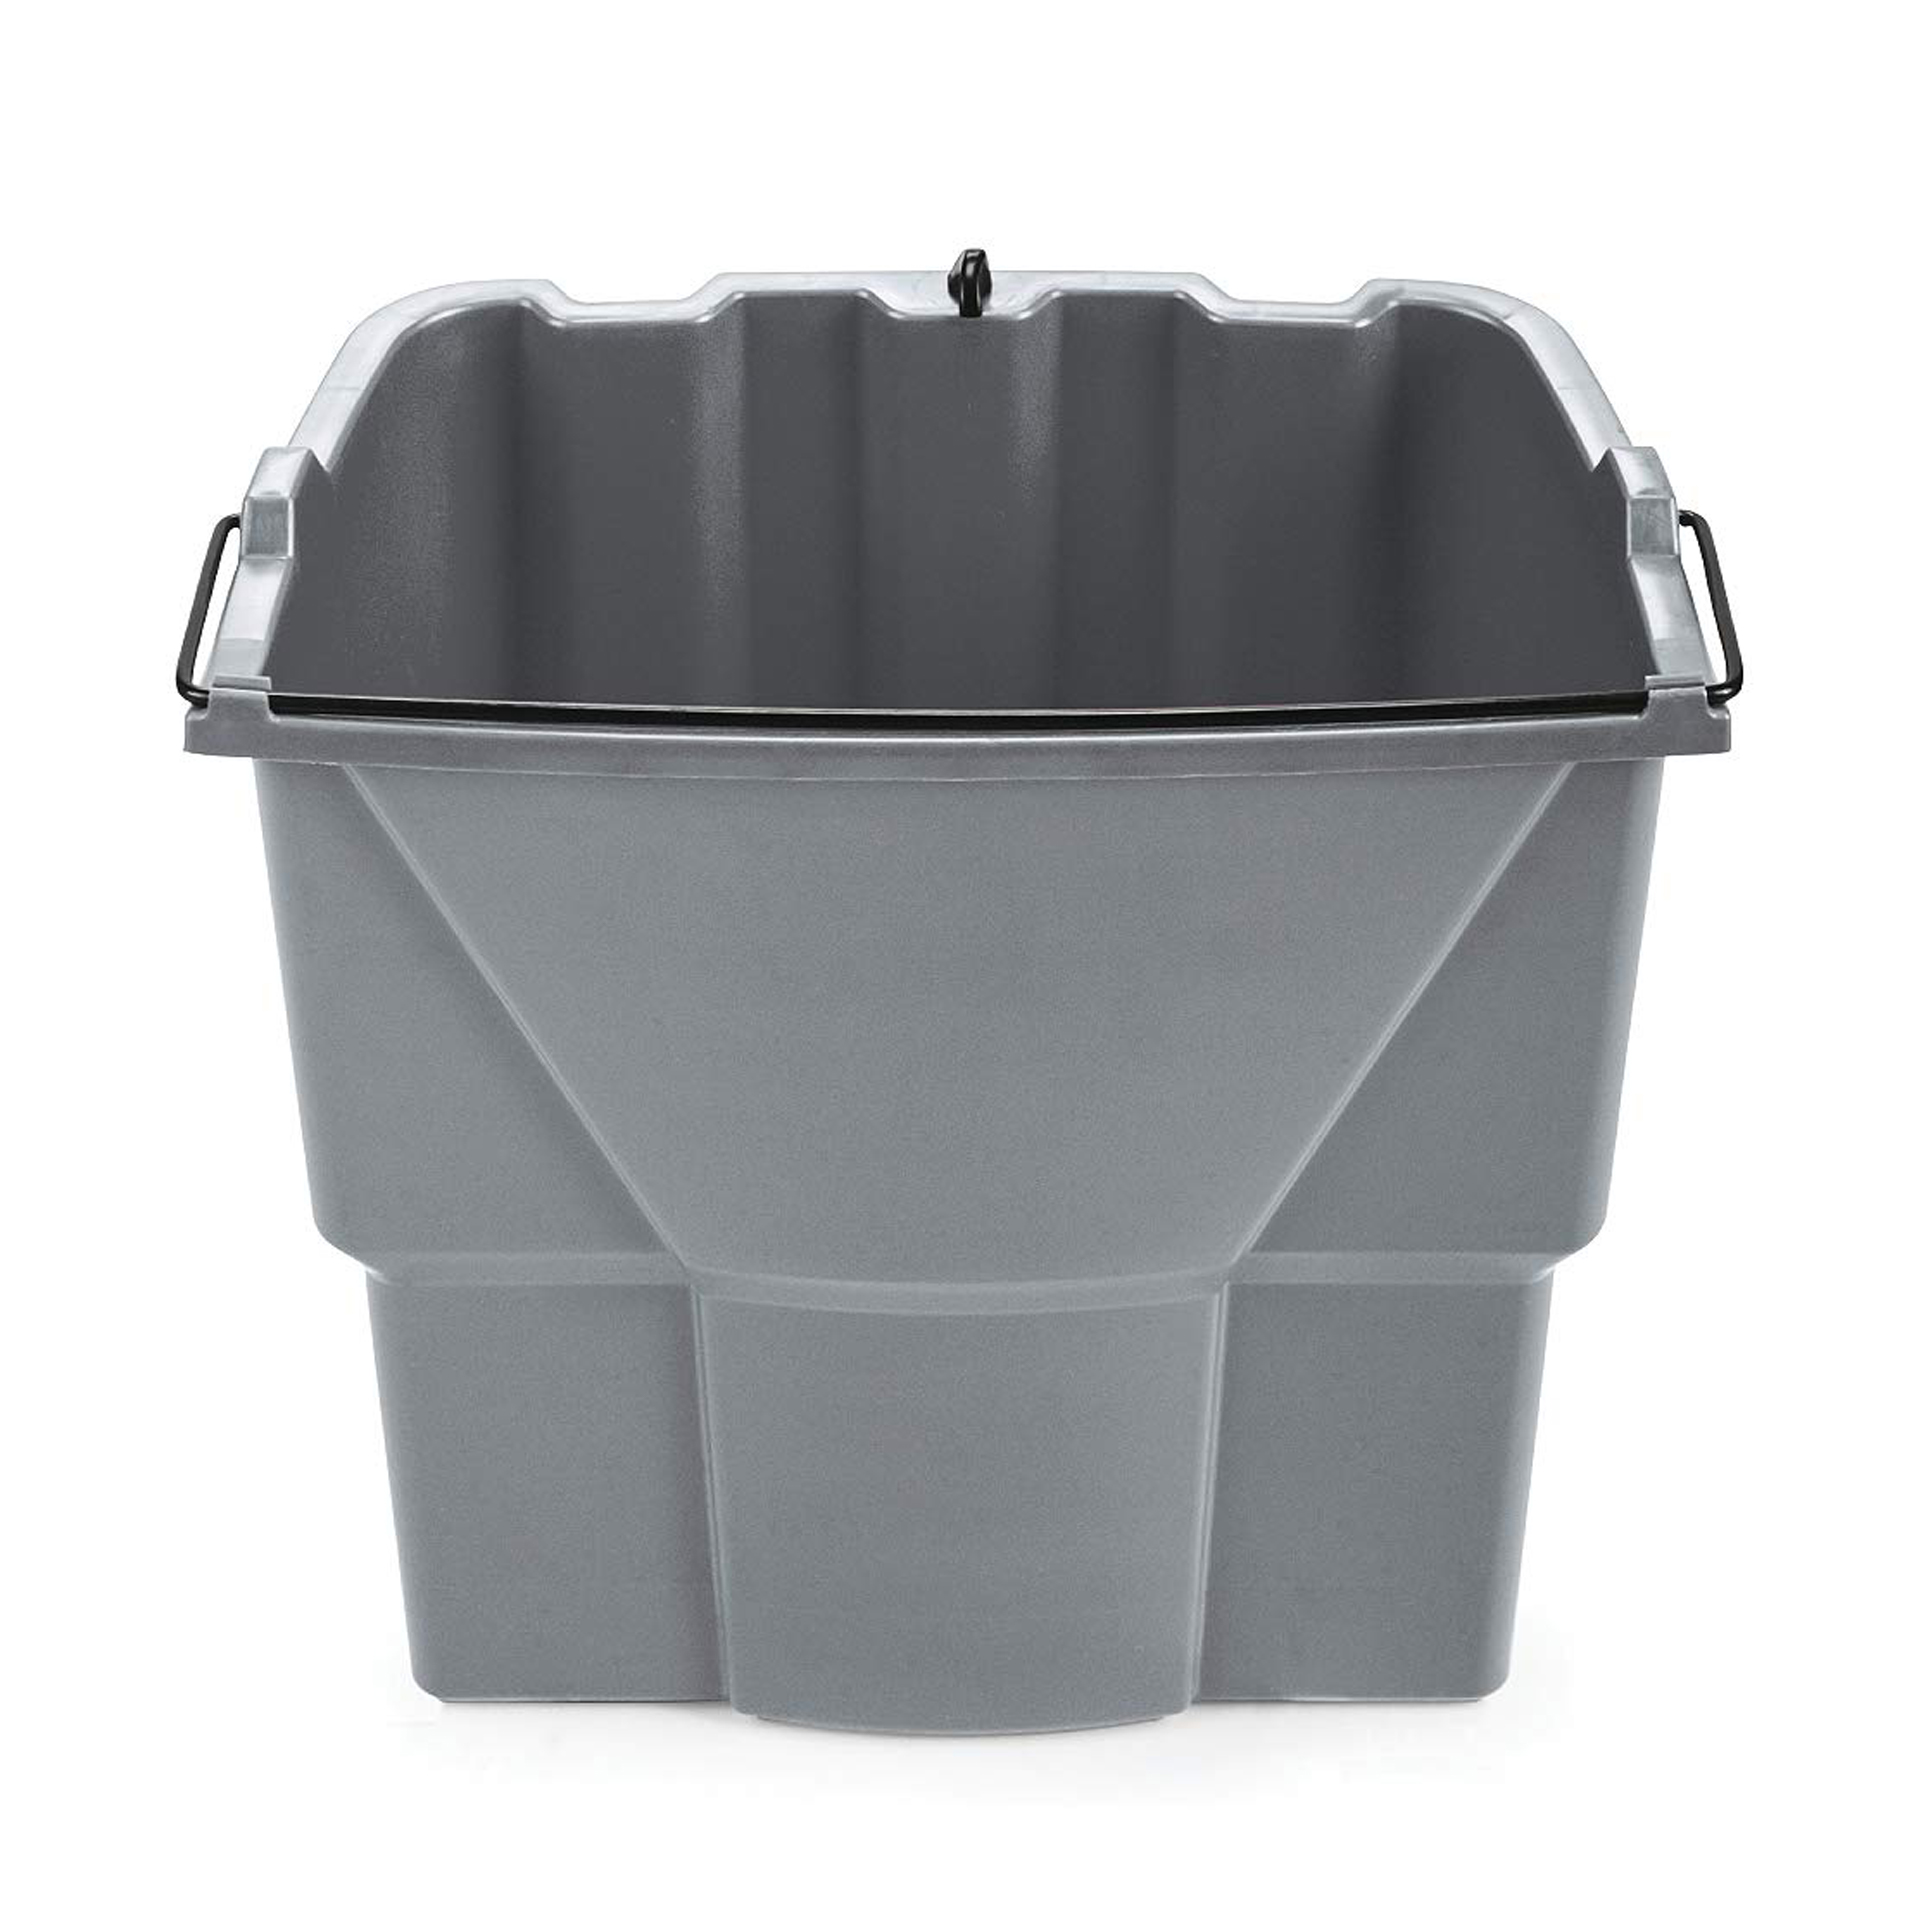 ถังน้ำสำหรับถังบีบม็อบ Executive Series™ WaveBrake® Dirty Water Bucket สีเทา